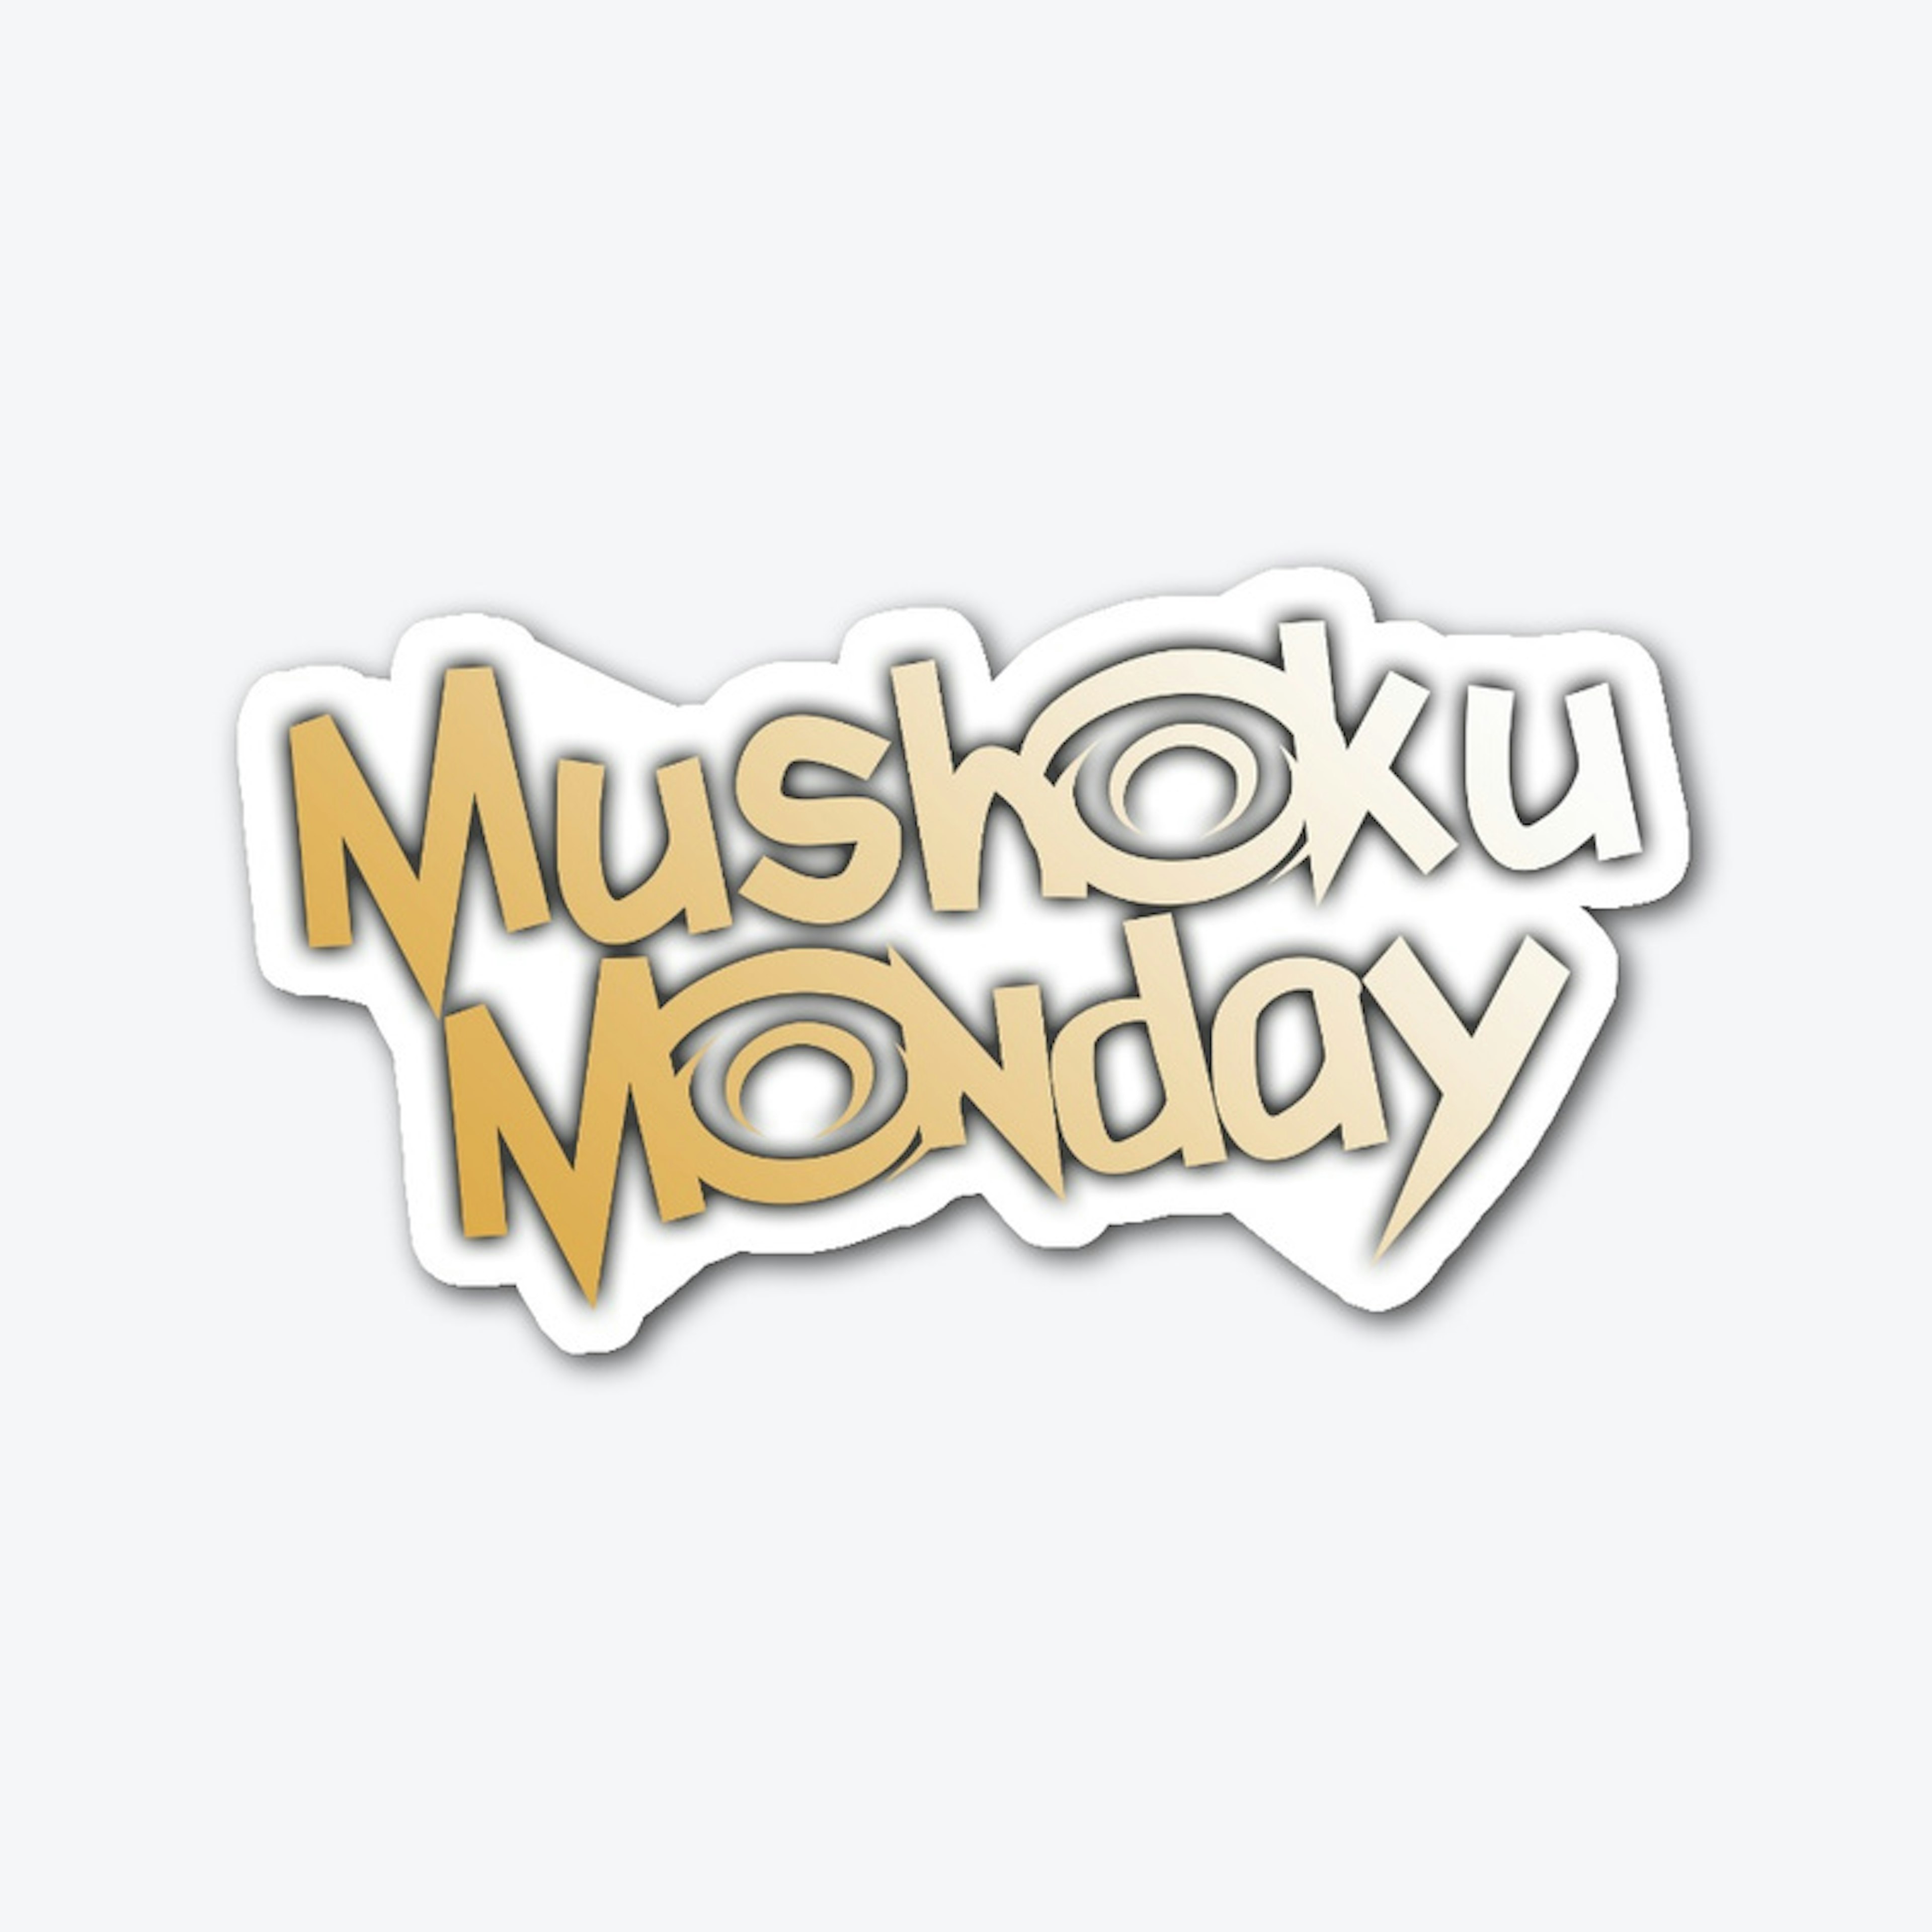 Mushoku Monday Sticker!